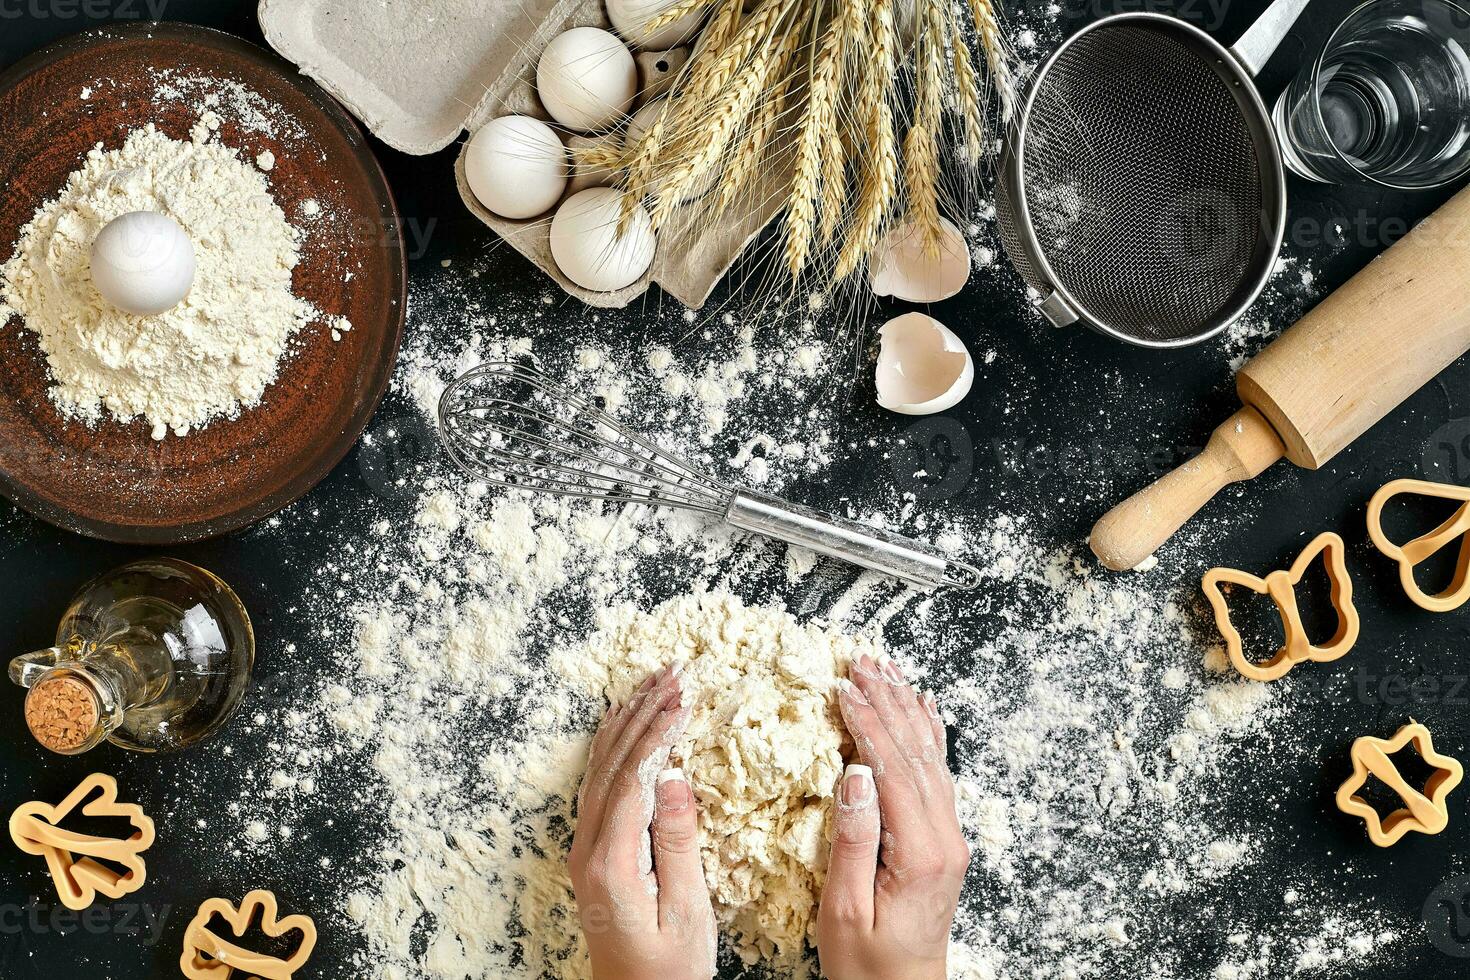 vrouw handen kneden deeg Aan tafel met meel, eieren en ingrediënten. top visie. foto